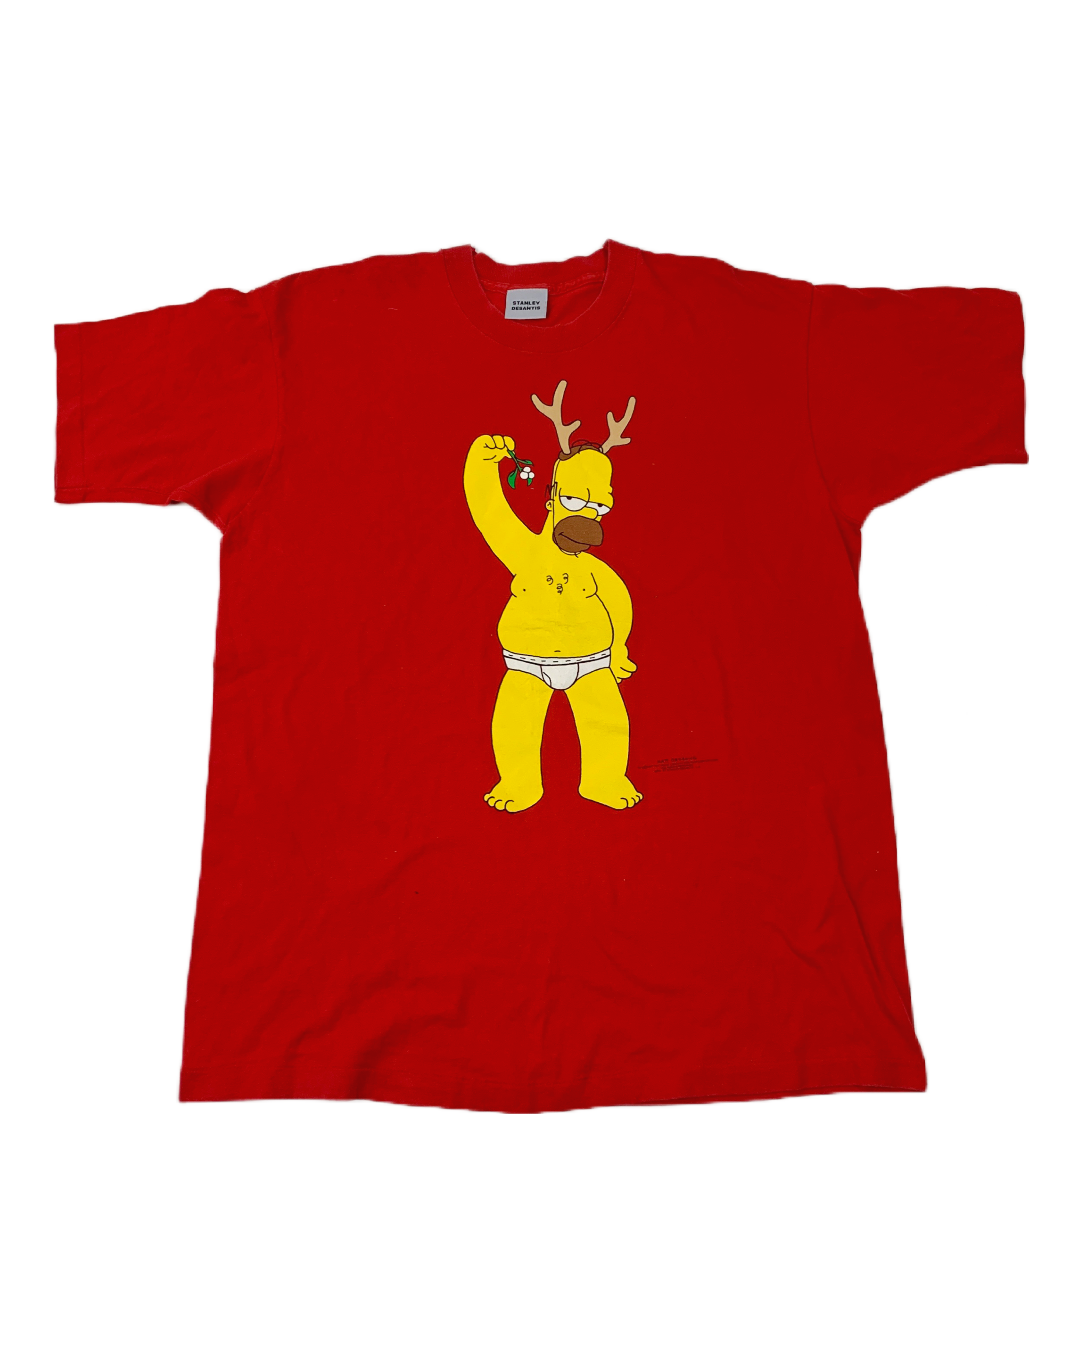 Stanley Desantis Homero Simpson 1997 Vintage T-Shirt - XL